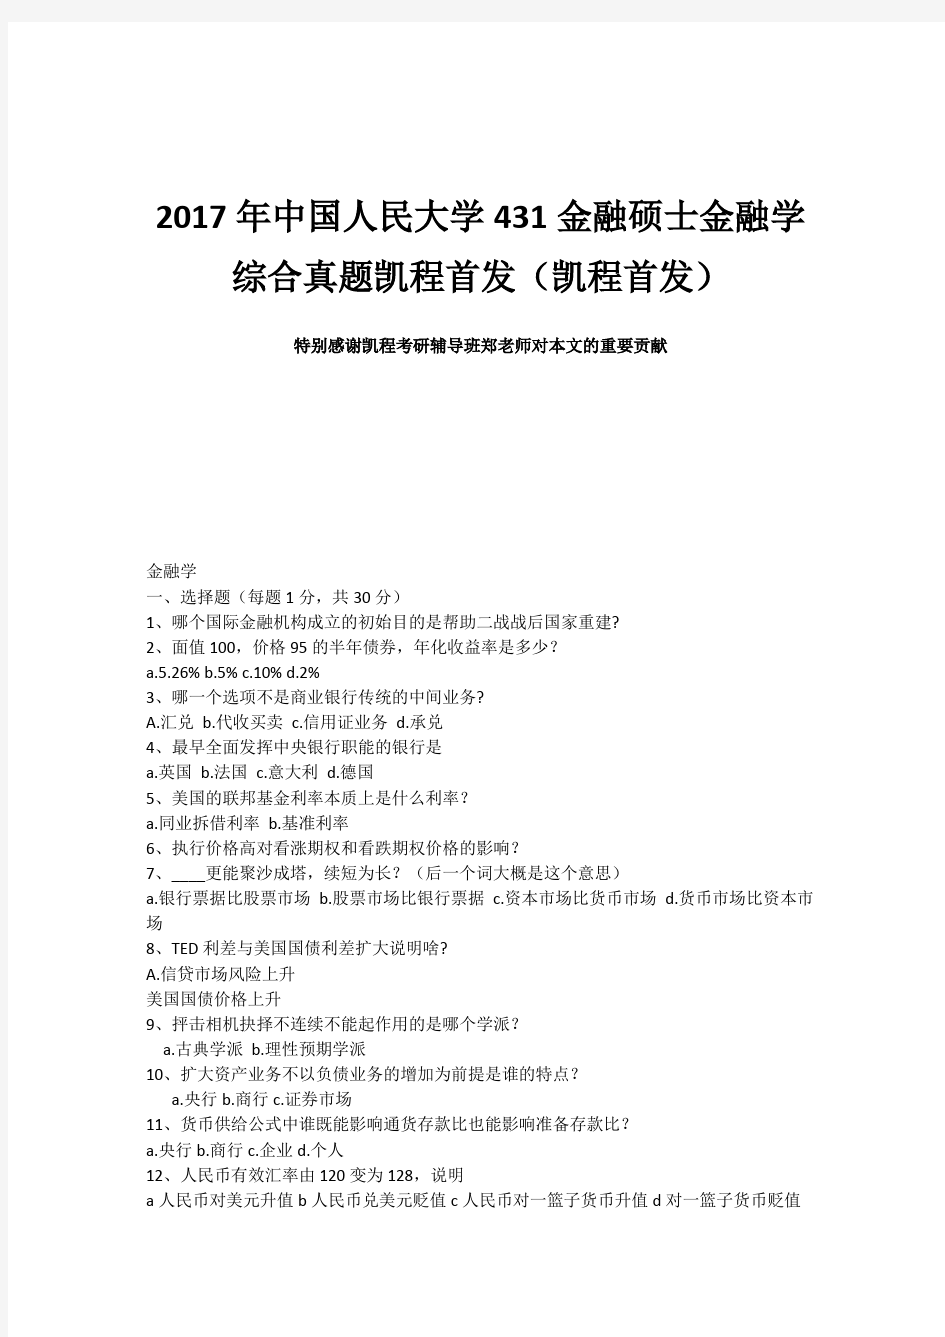 2017年中国人民大学431金融硕士金融学综合真题凯程首发(凯程首发)